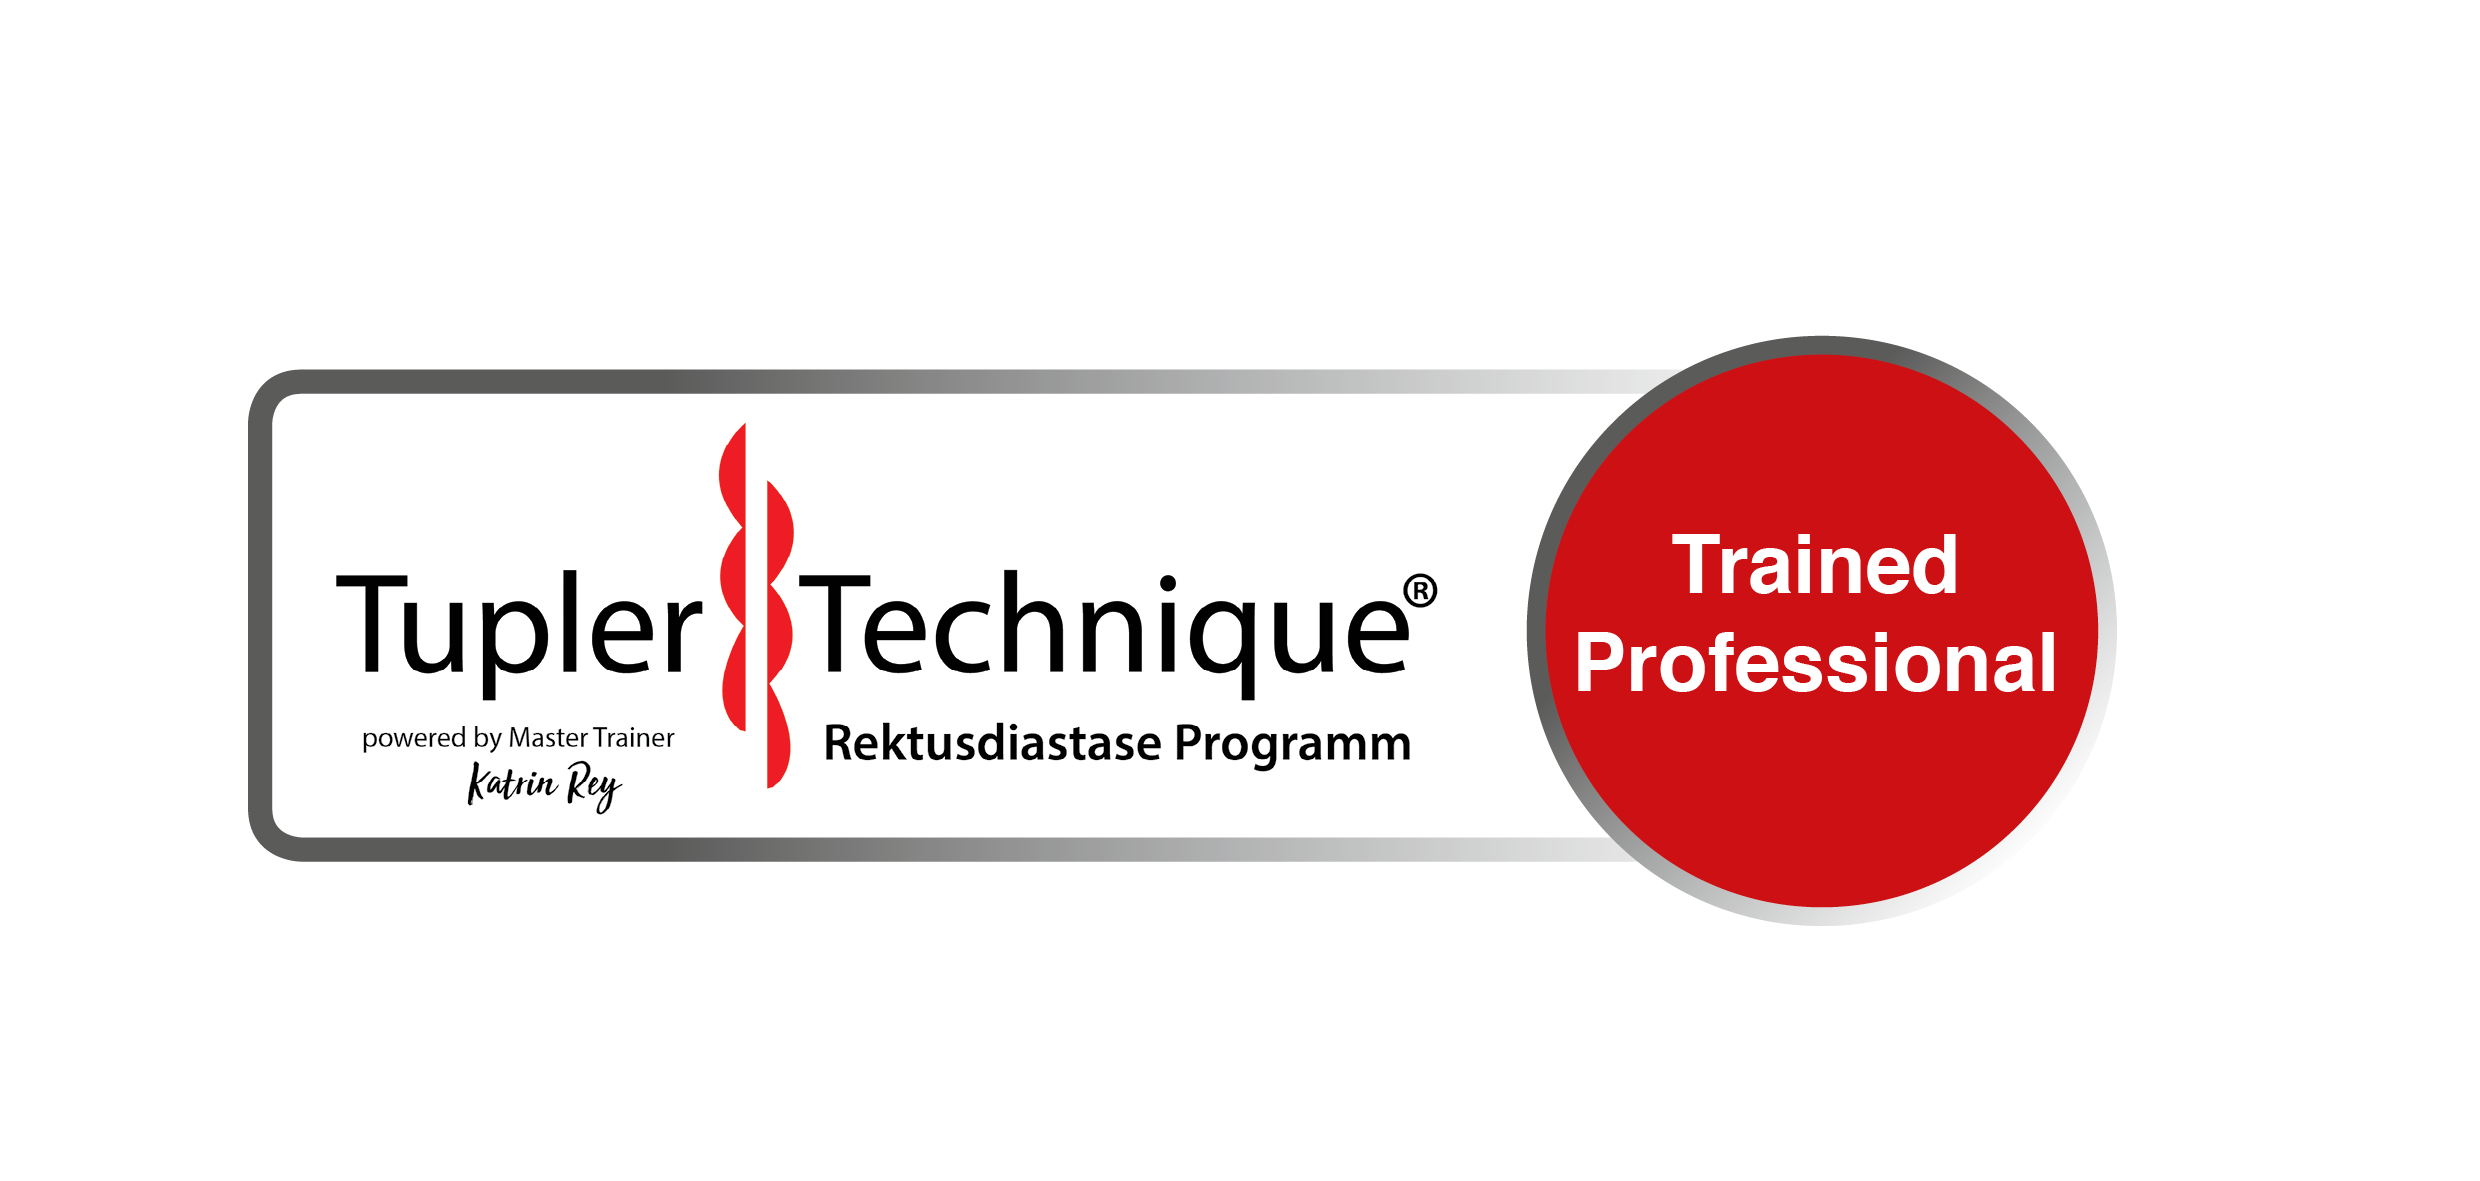 Auszeichnung und Logo für die Qualifikation zum Titel Tupler Technique® Trained Professional.